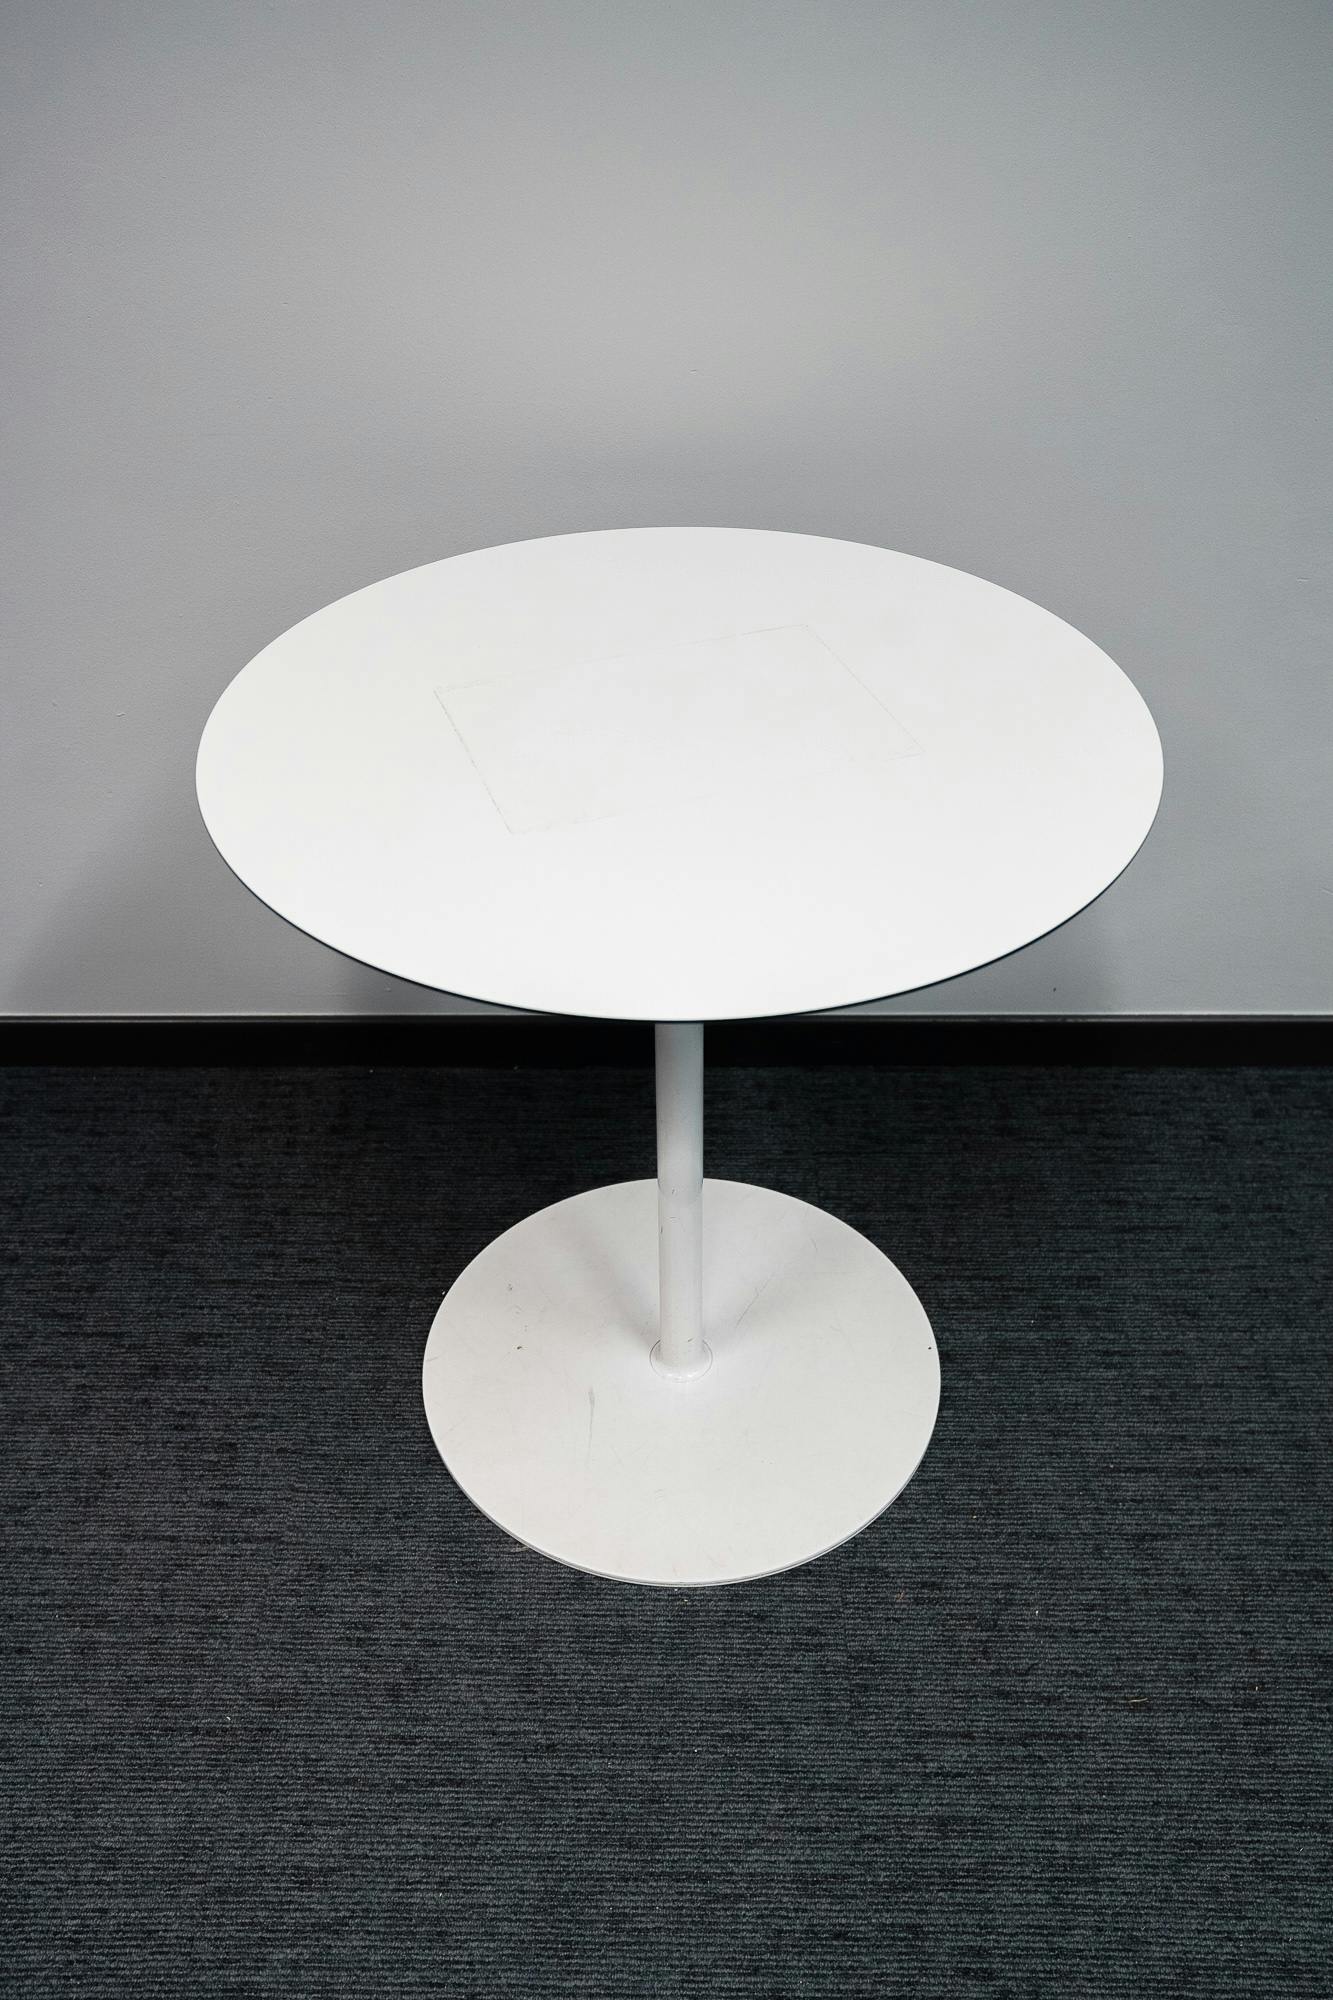 Witte ronde tafel - Tweedehands kwaliteit "Tafels" - Relieve Furniture